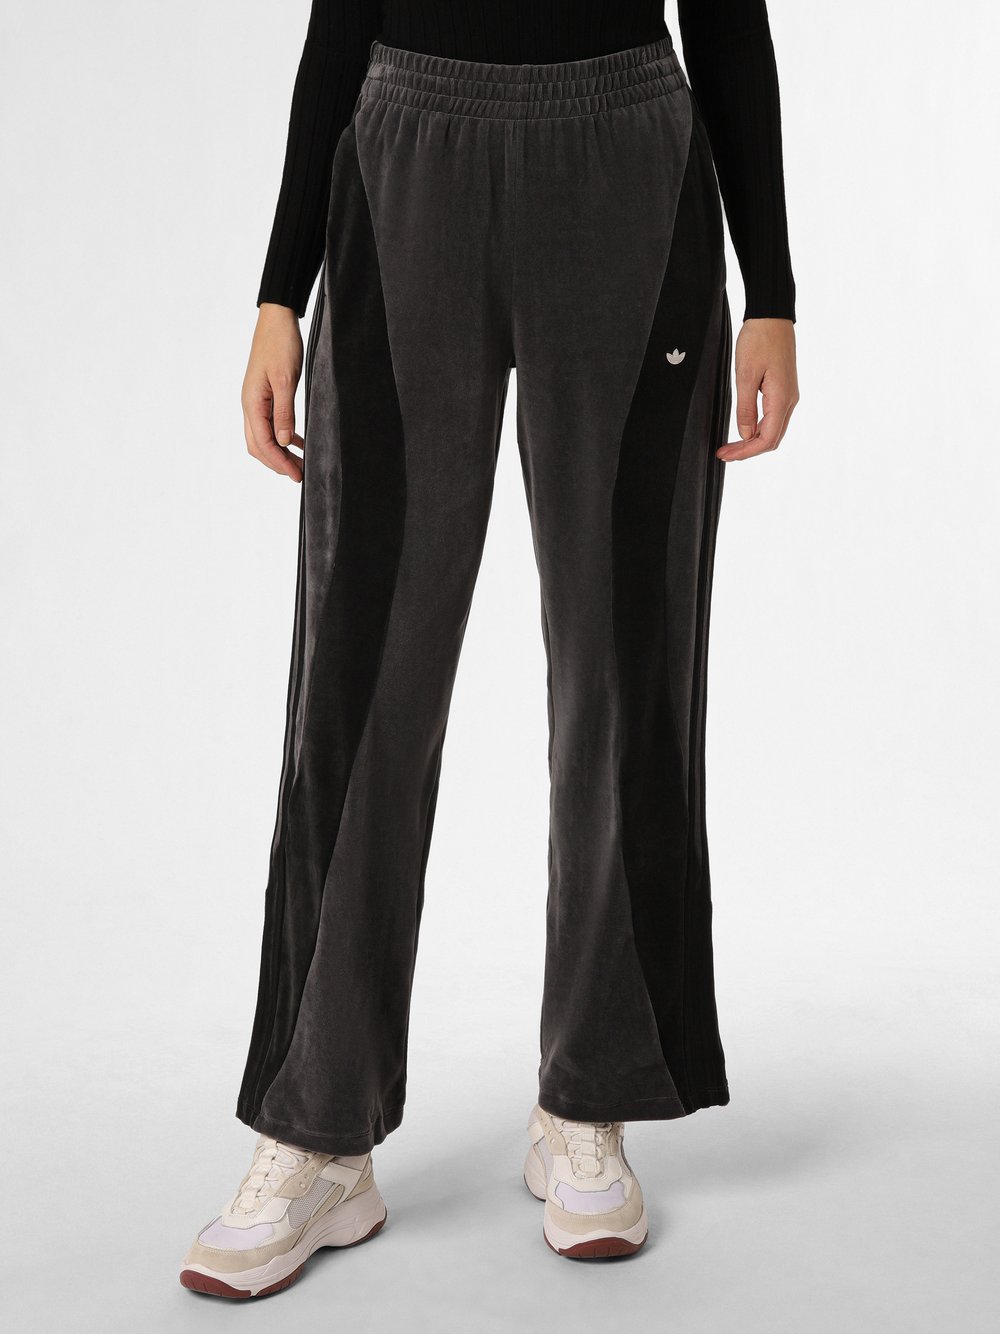 Obraz przedstawiający adidas Originals Damskie spodnie dresowe Kobiety Bawełna szary jednolity, M